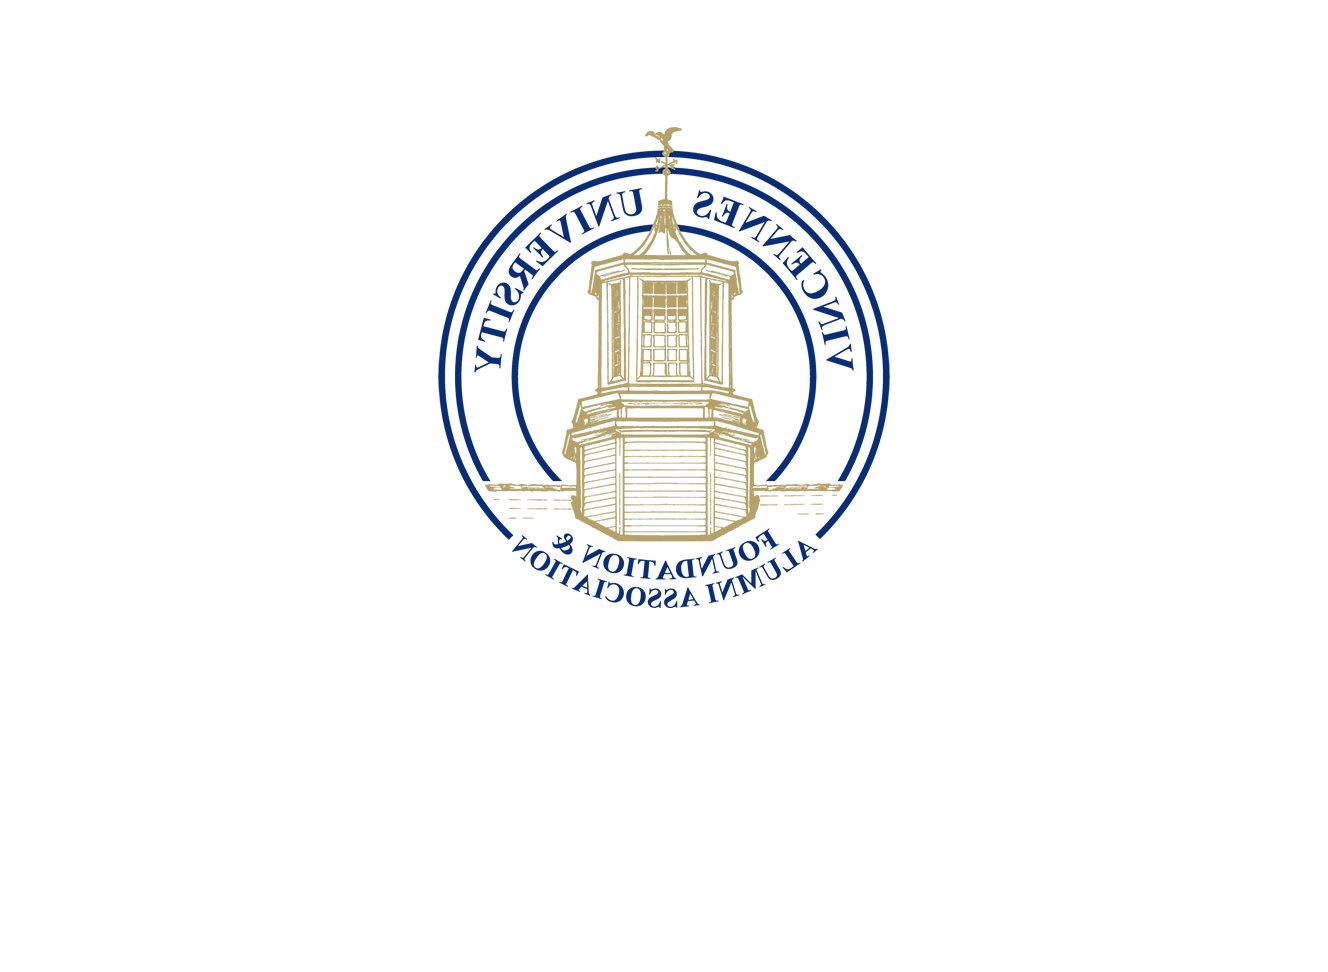 校友 and Foundation Logo